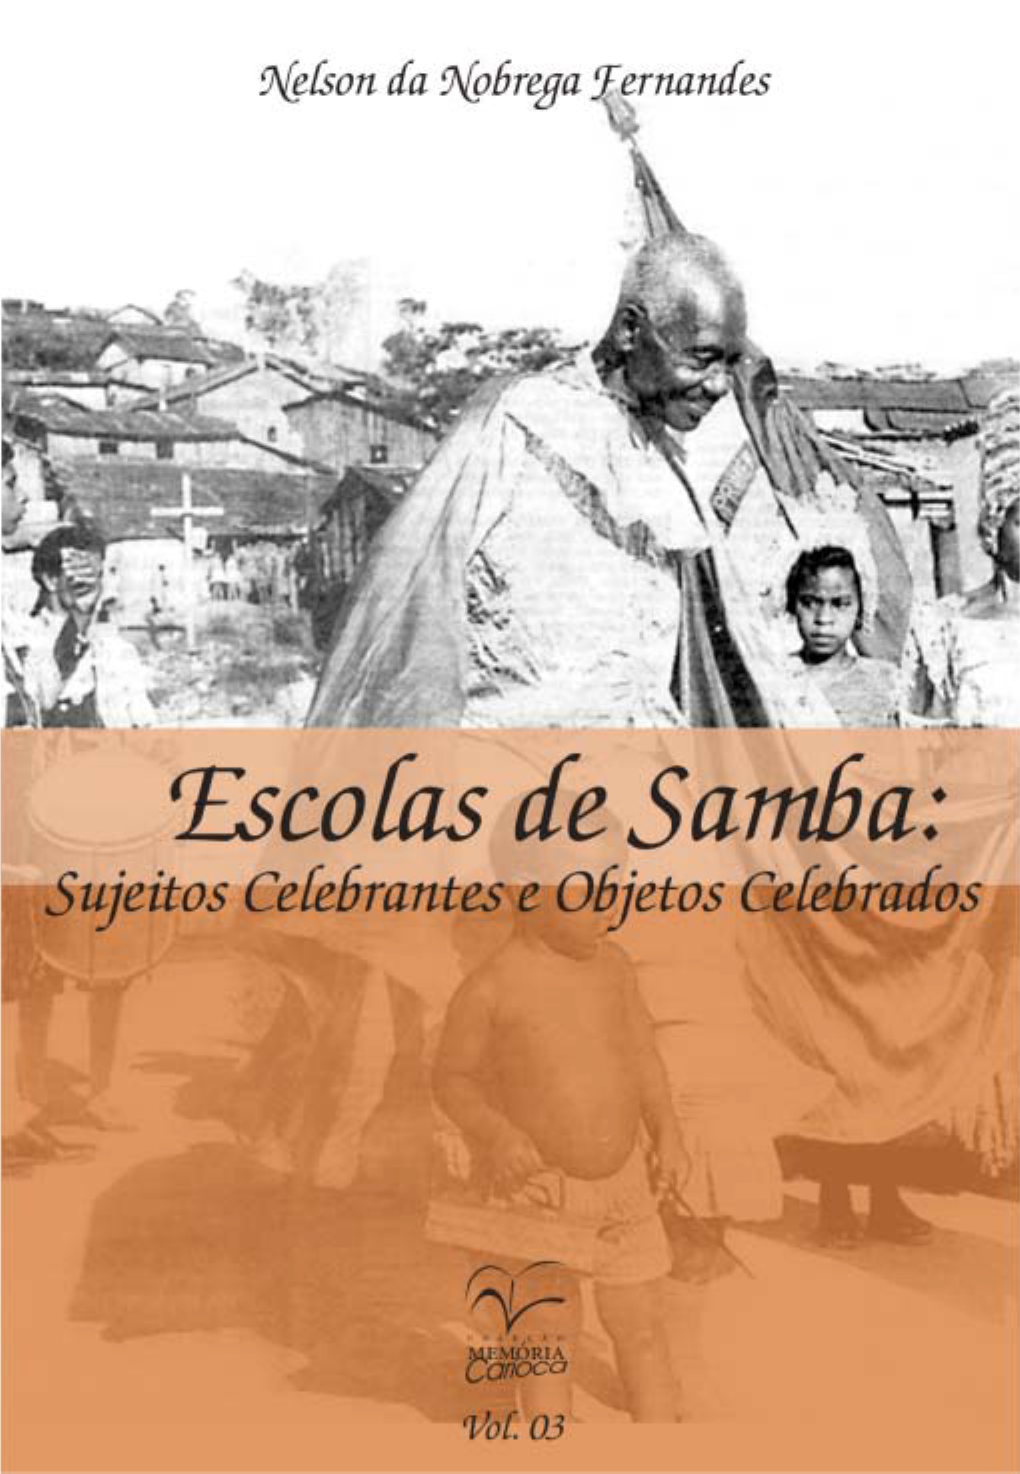 Escolas De Samba: Sujeitos Celebrantes E Objetos Celebrados PREFEITURA DA CIDADE DO RIO DE JANEIRO Cesar Maia